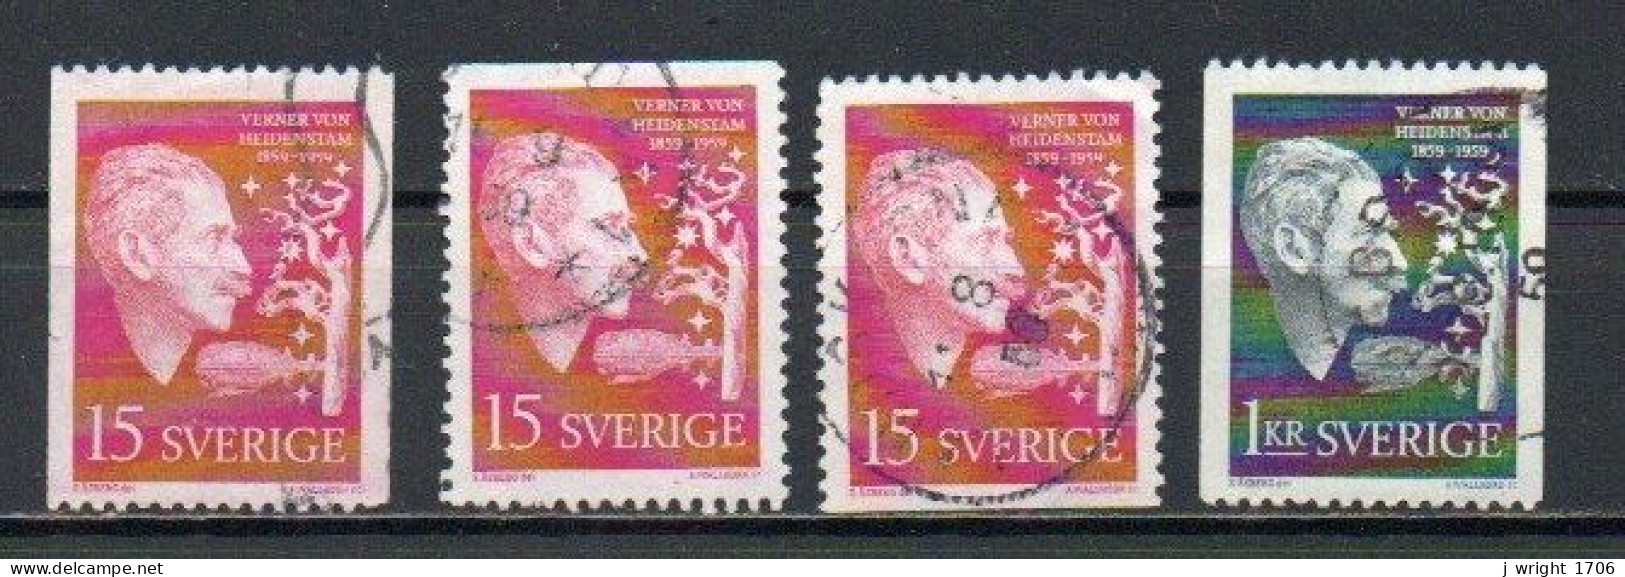 Sweden, 1959, Verner Von Heidenstam, Set, USED - Used Stamps